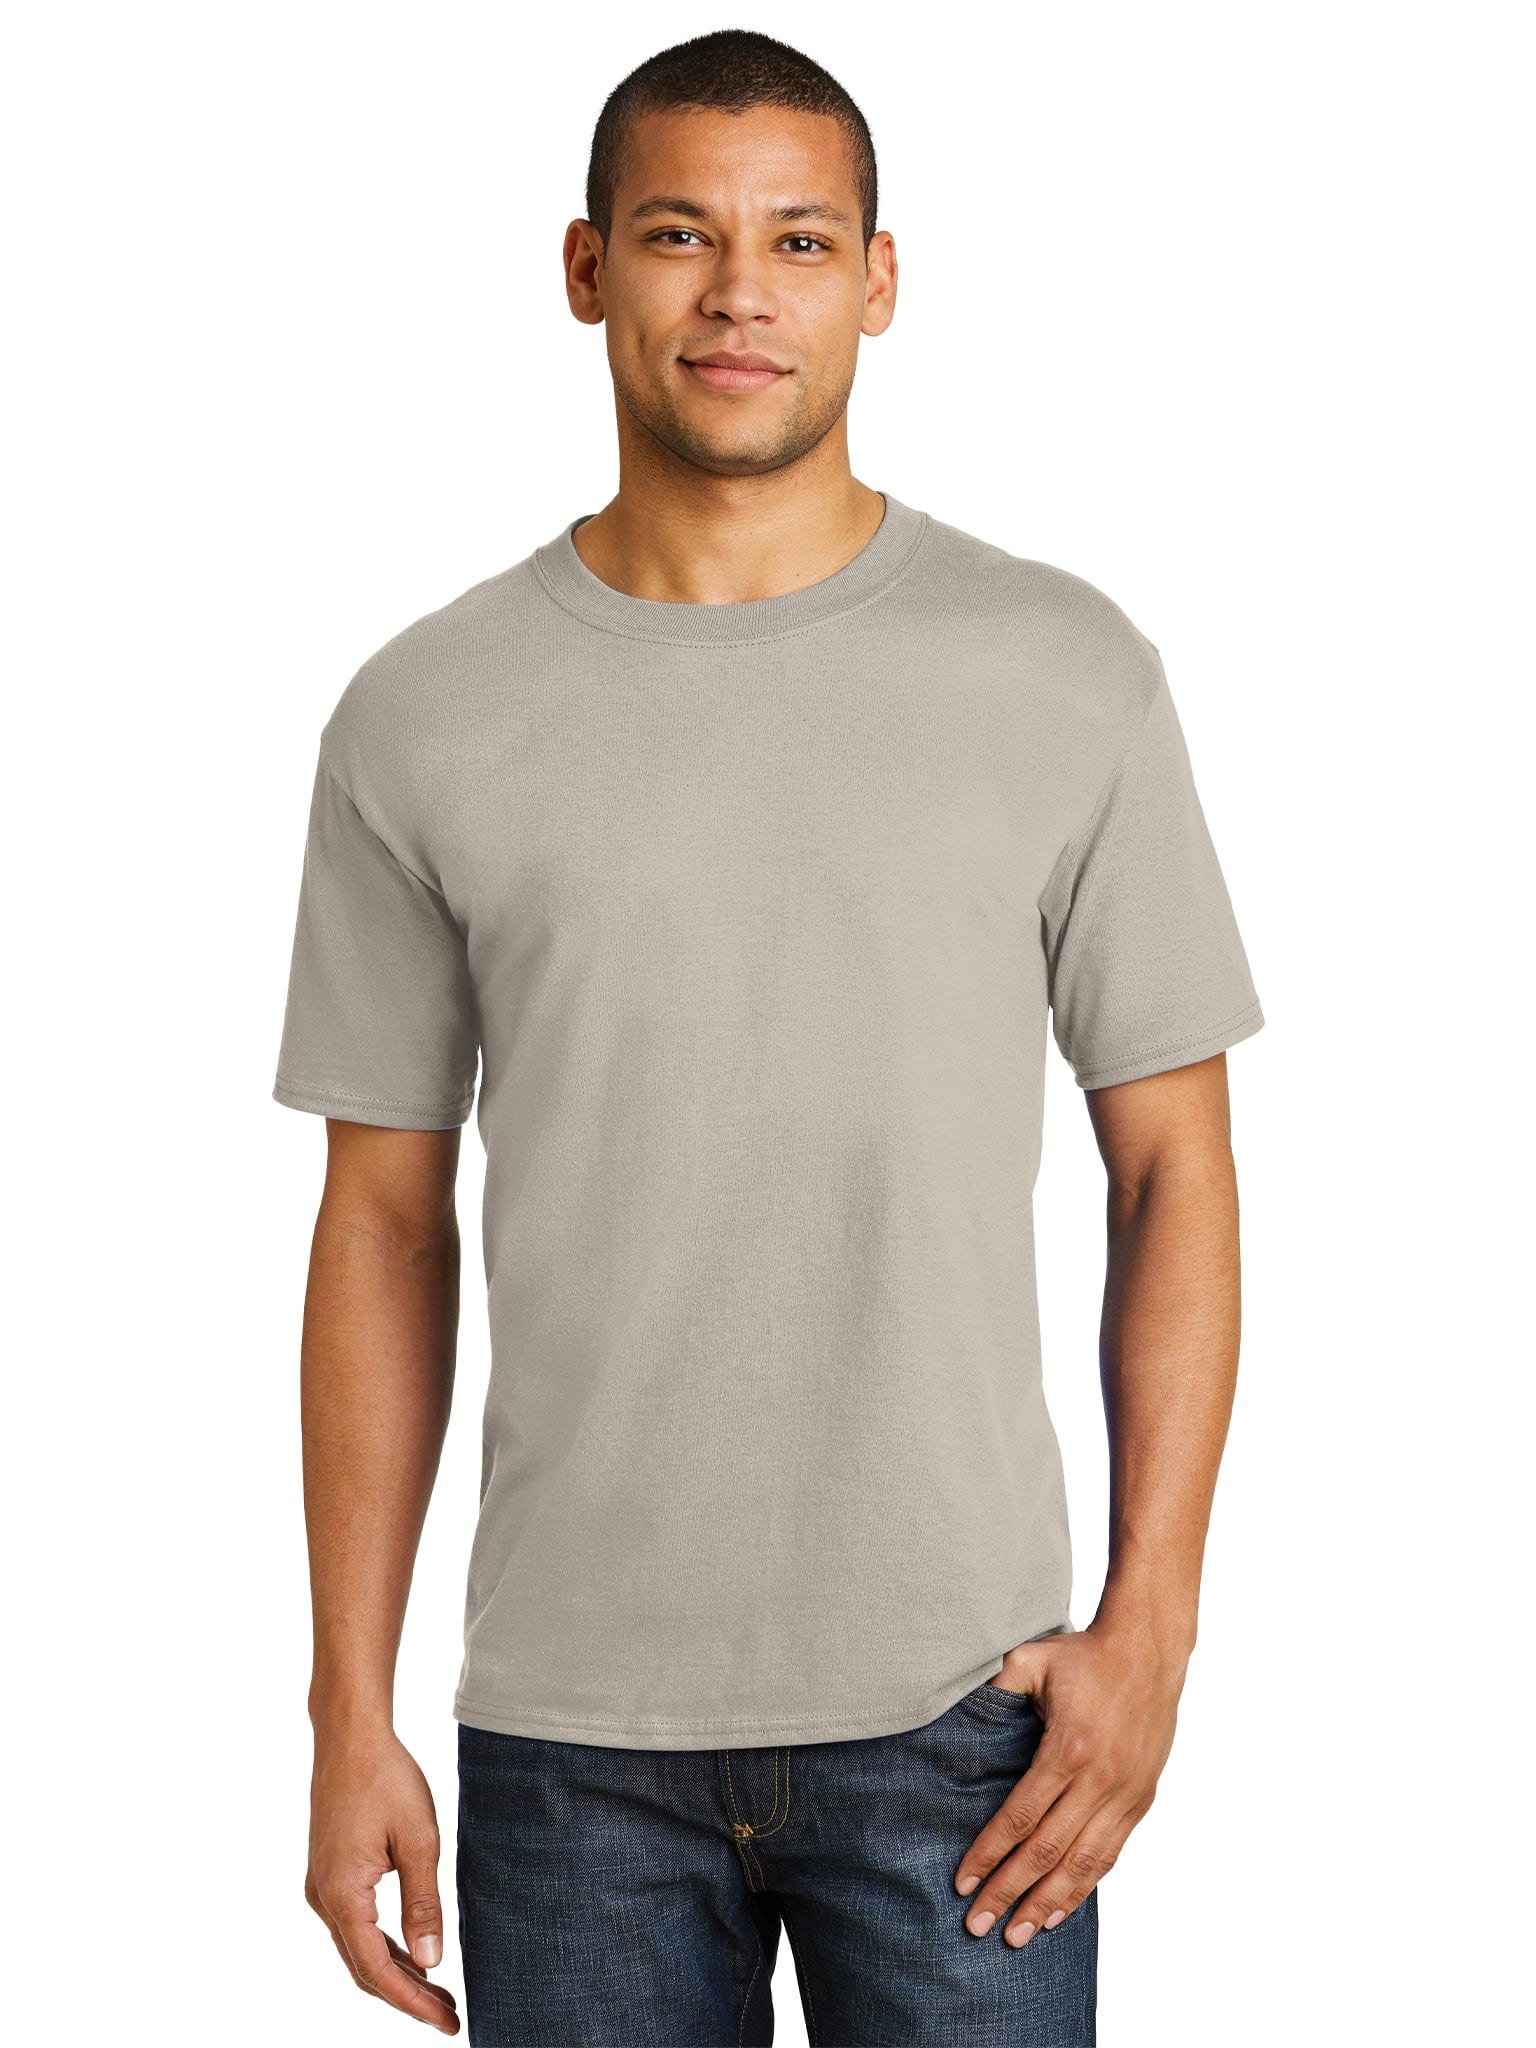 Hanes TAGLESS T-Shirt, 5250 or # H5250